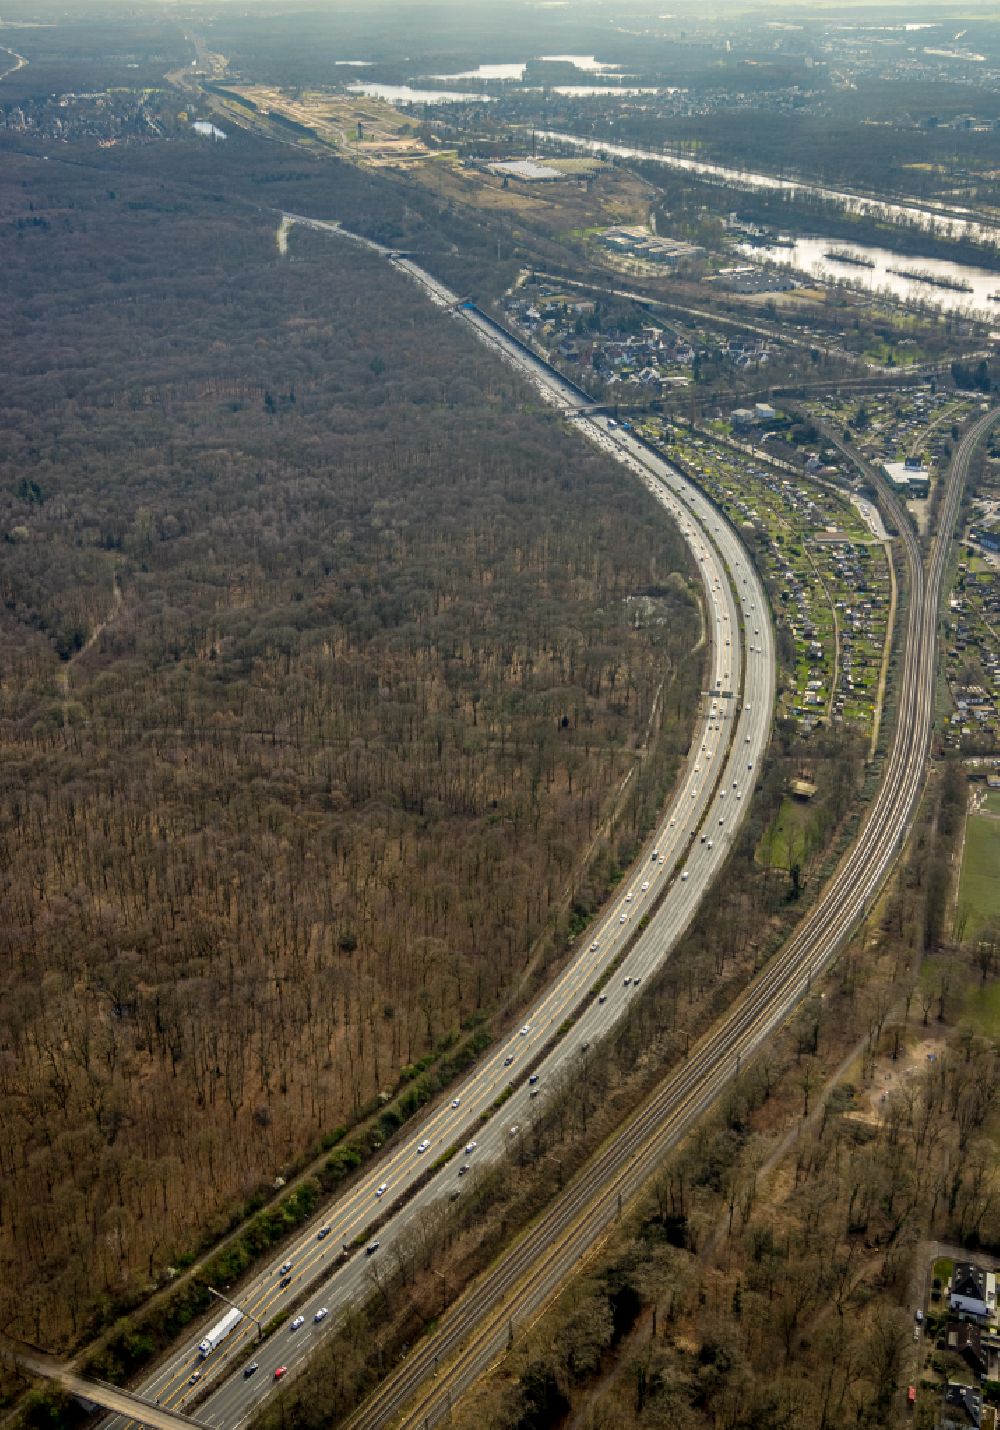 Luftaufnahme Duisburg - Autobahn- Streckenverlauf der BAB A3 in Duisburg im Bundesland Nordrhein-Westfalen, Deutschland